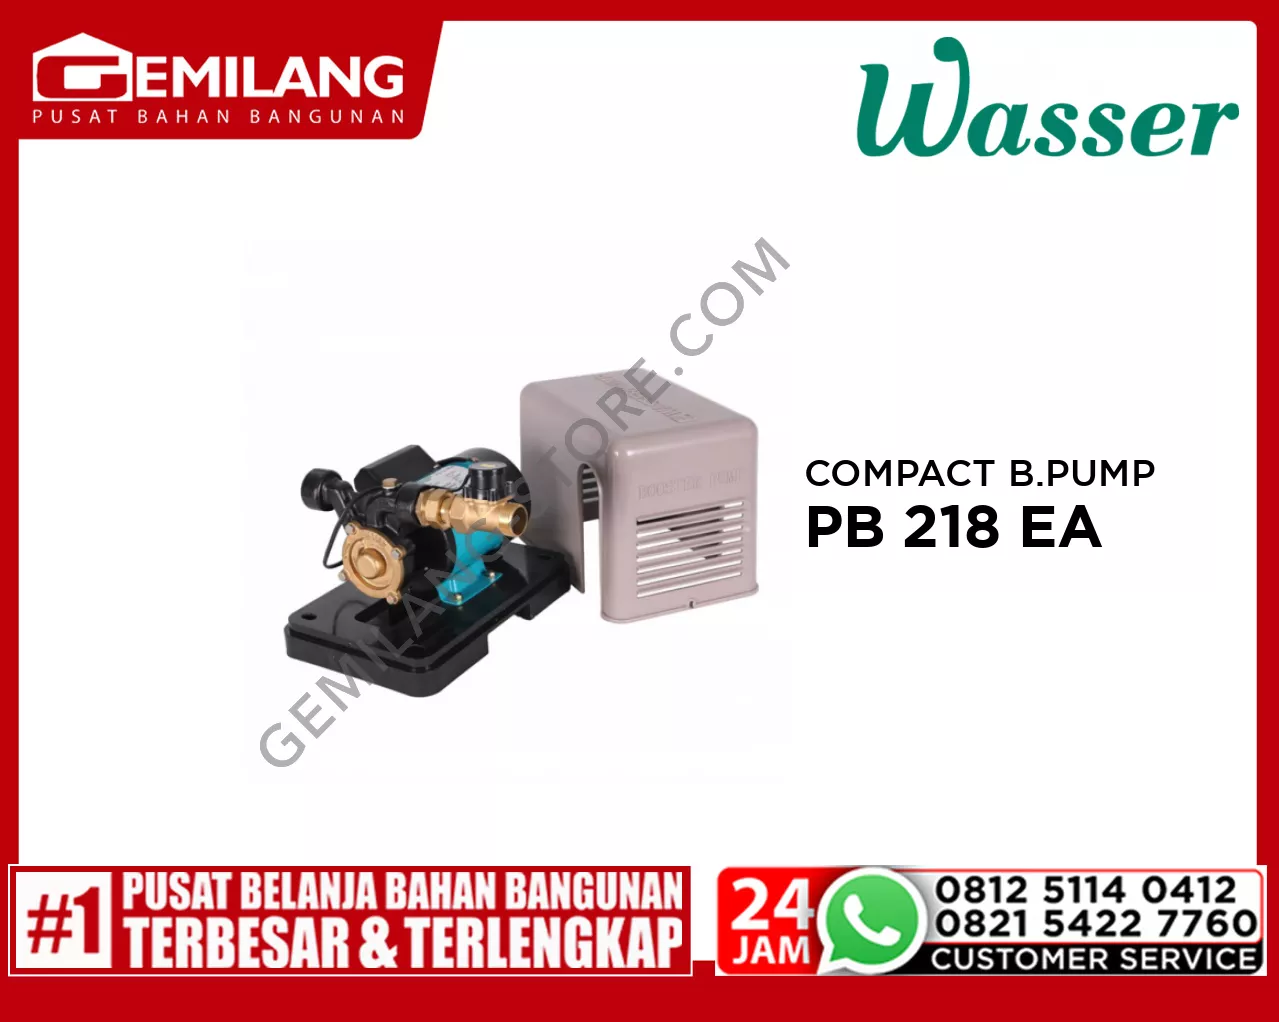 WASSER COMPACT BOOSTER PUMP PB 218 EA